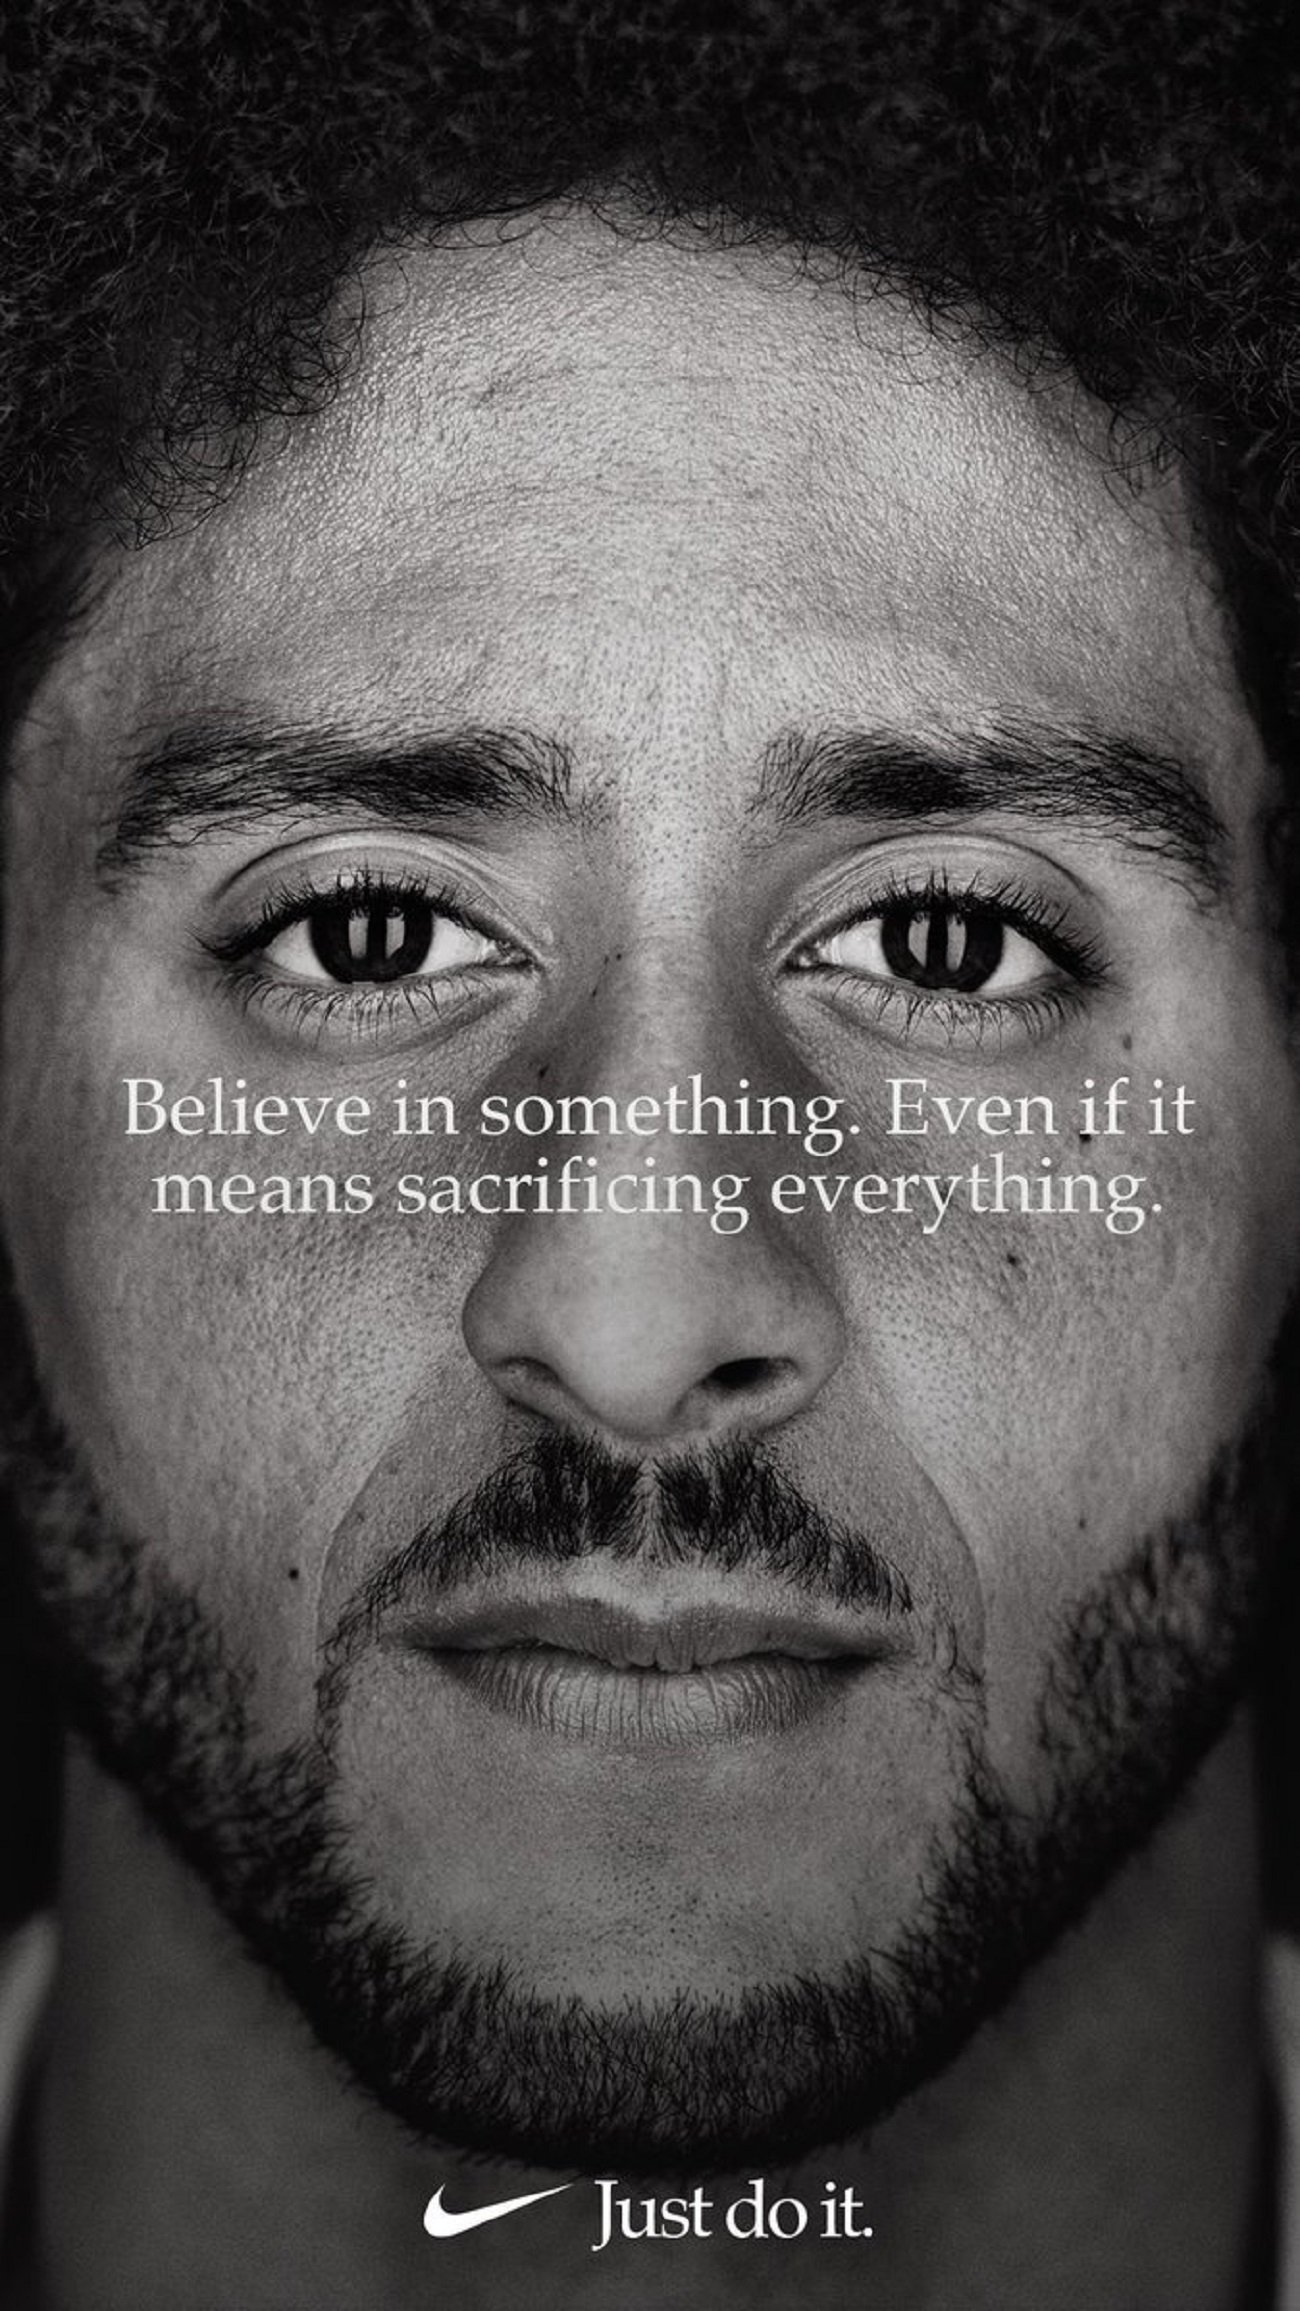 Nike fitxa el símbol esportiu de la lluita antiracista